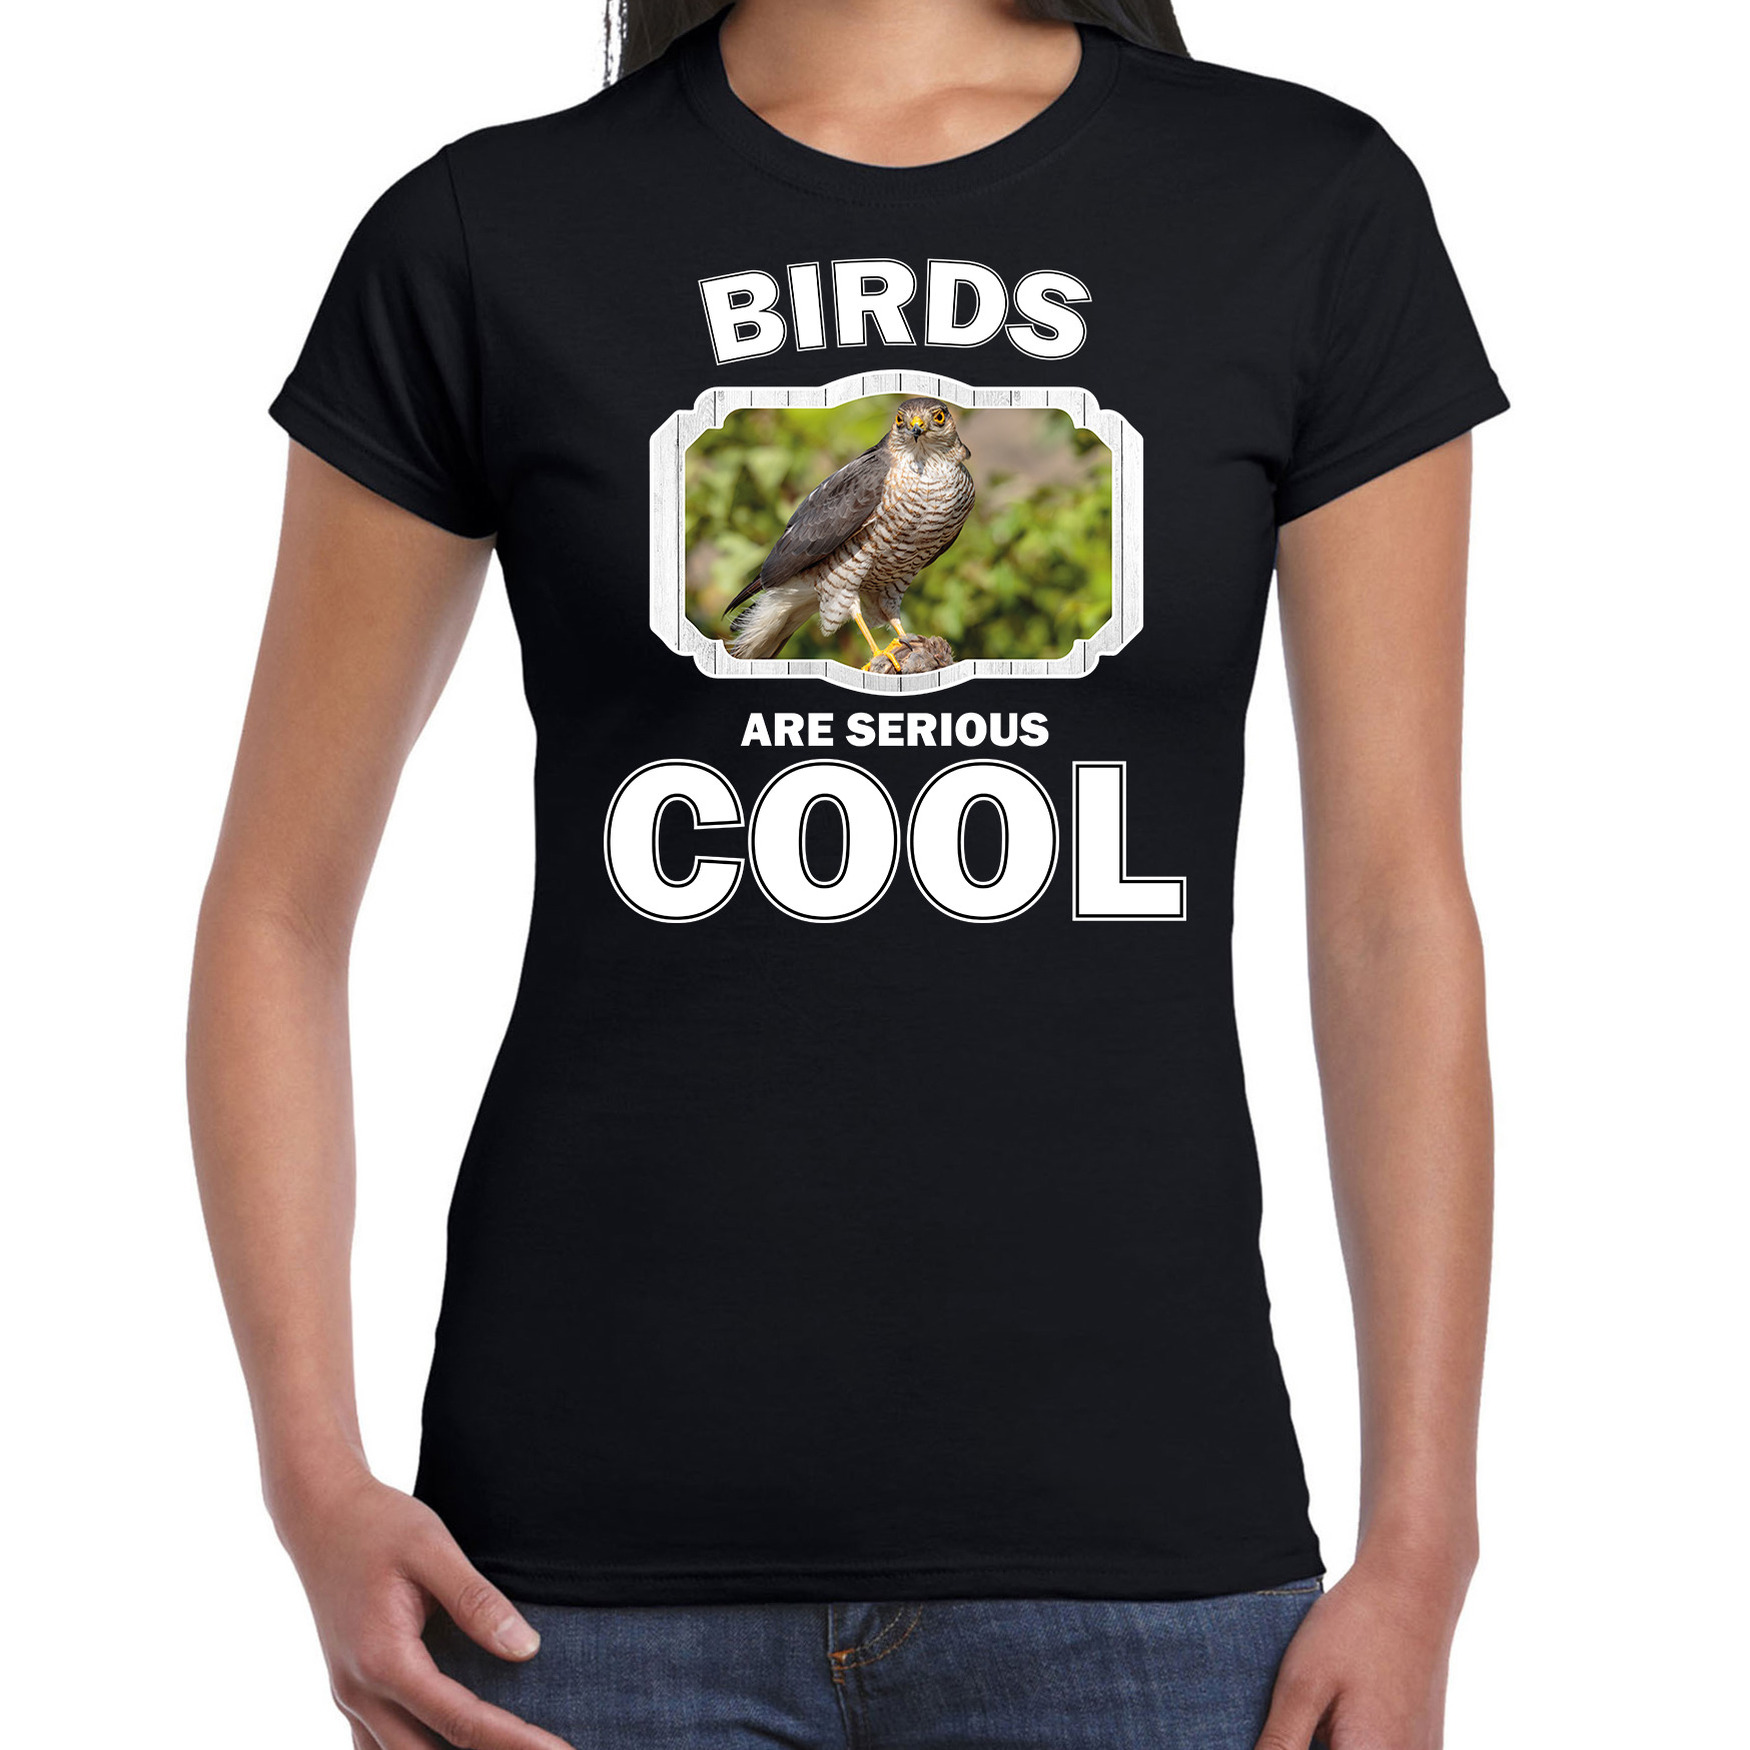 Dieren havik roofvogel t-shirt zwart dames birds are cool shirt